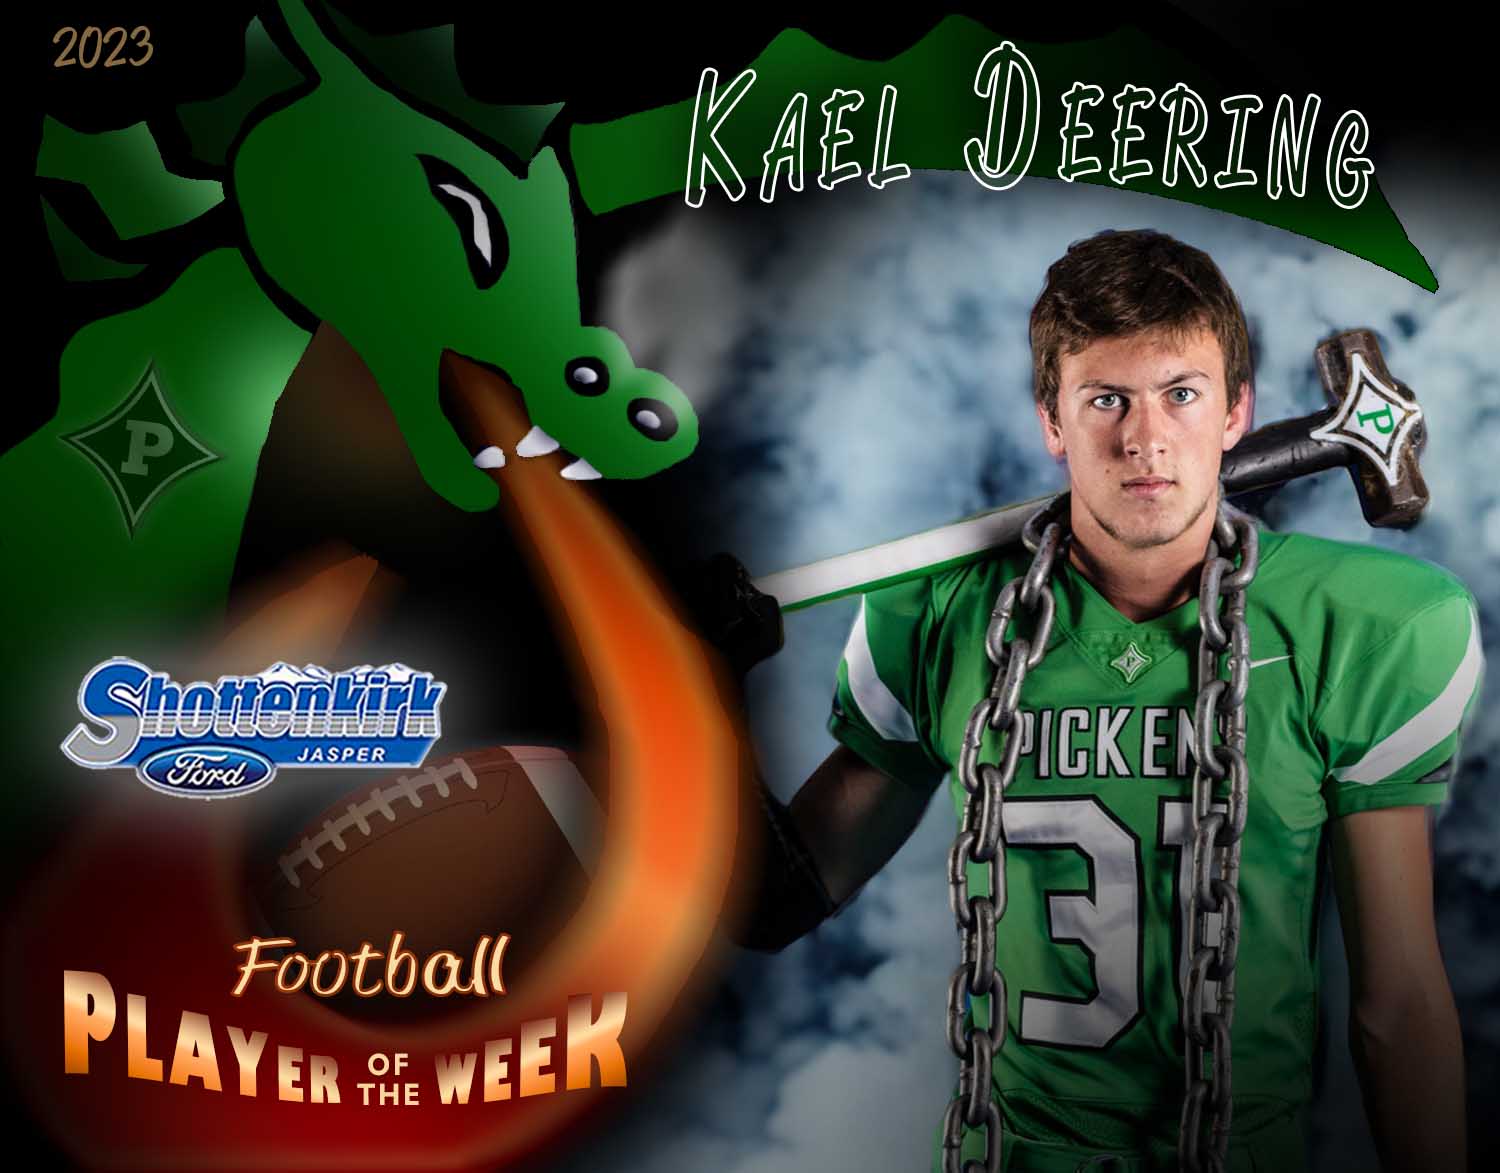 PHS Football Player of the Week #5 - Kael Deering